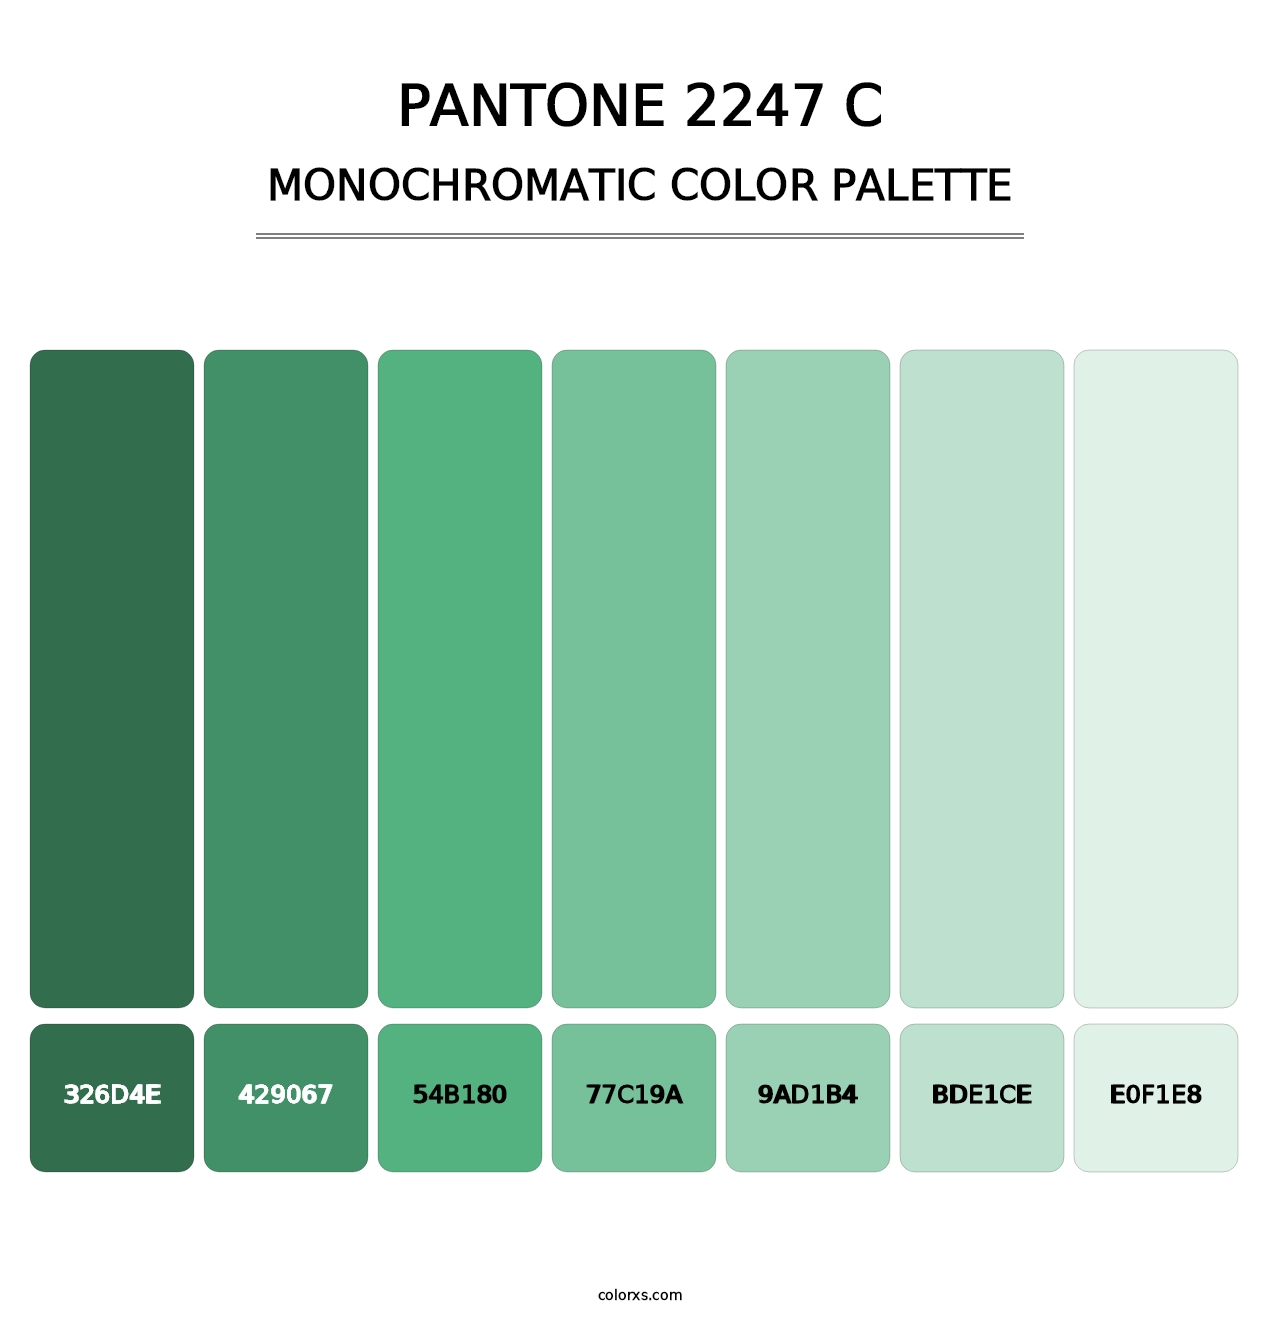 PANTONE 2247 C - Monochromatic Color Palette